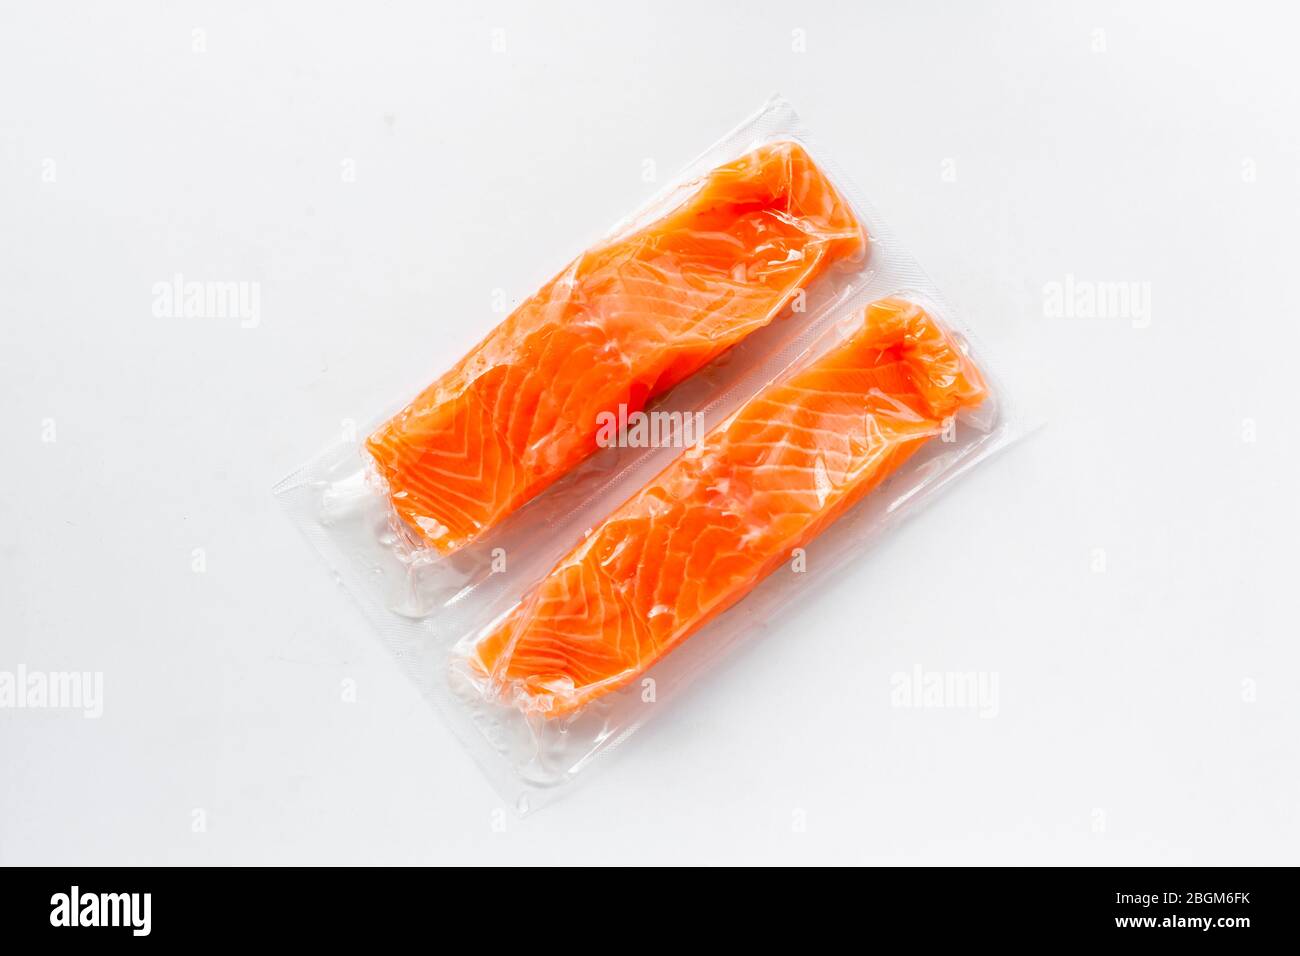 Filetti di pesce rosso o salmone in confezione sottovuoto su fondo bianco. Pesce fresco, omega 3. Concetto di alimentazione sana. Foto Stock